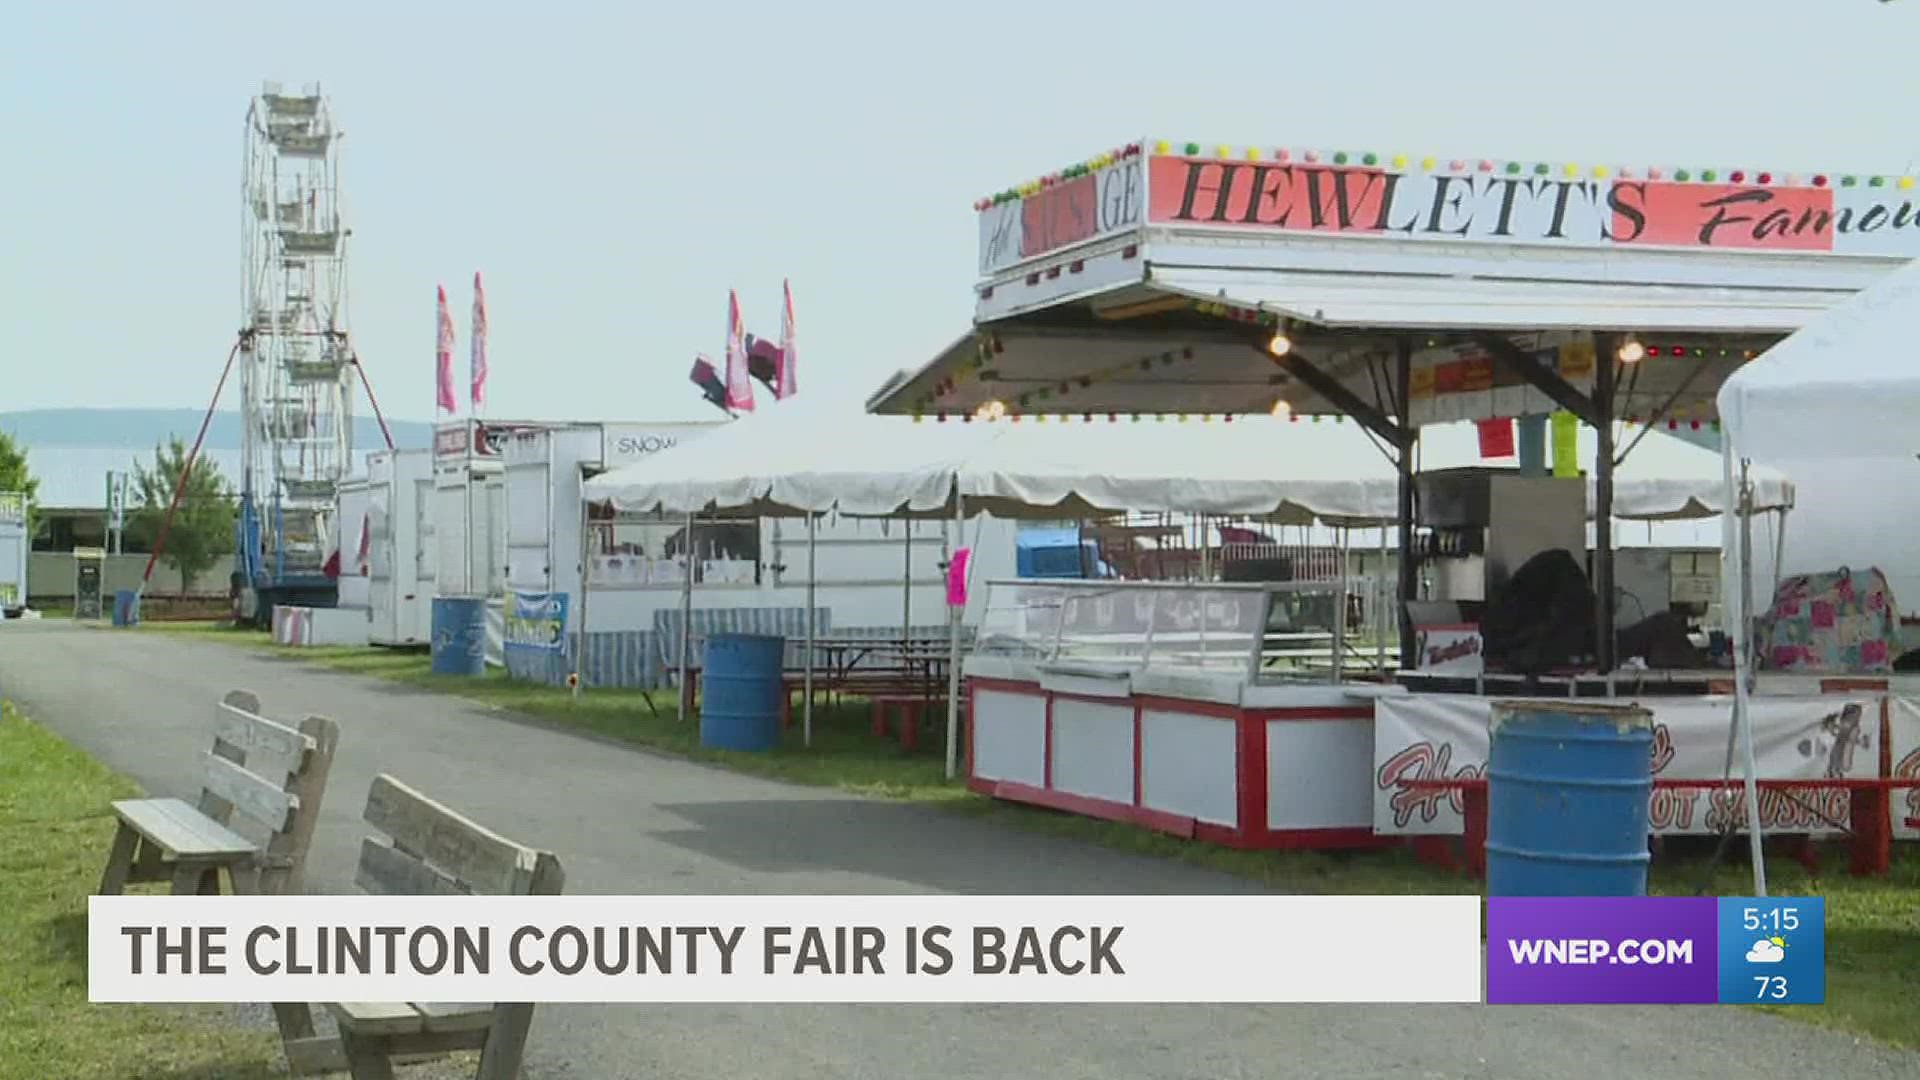 Clinton County Fair is in full swing